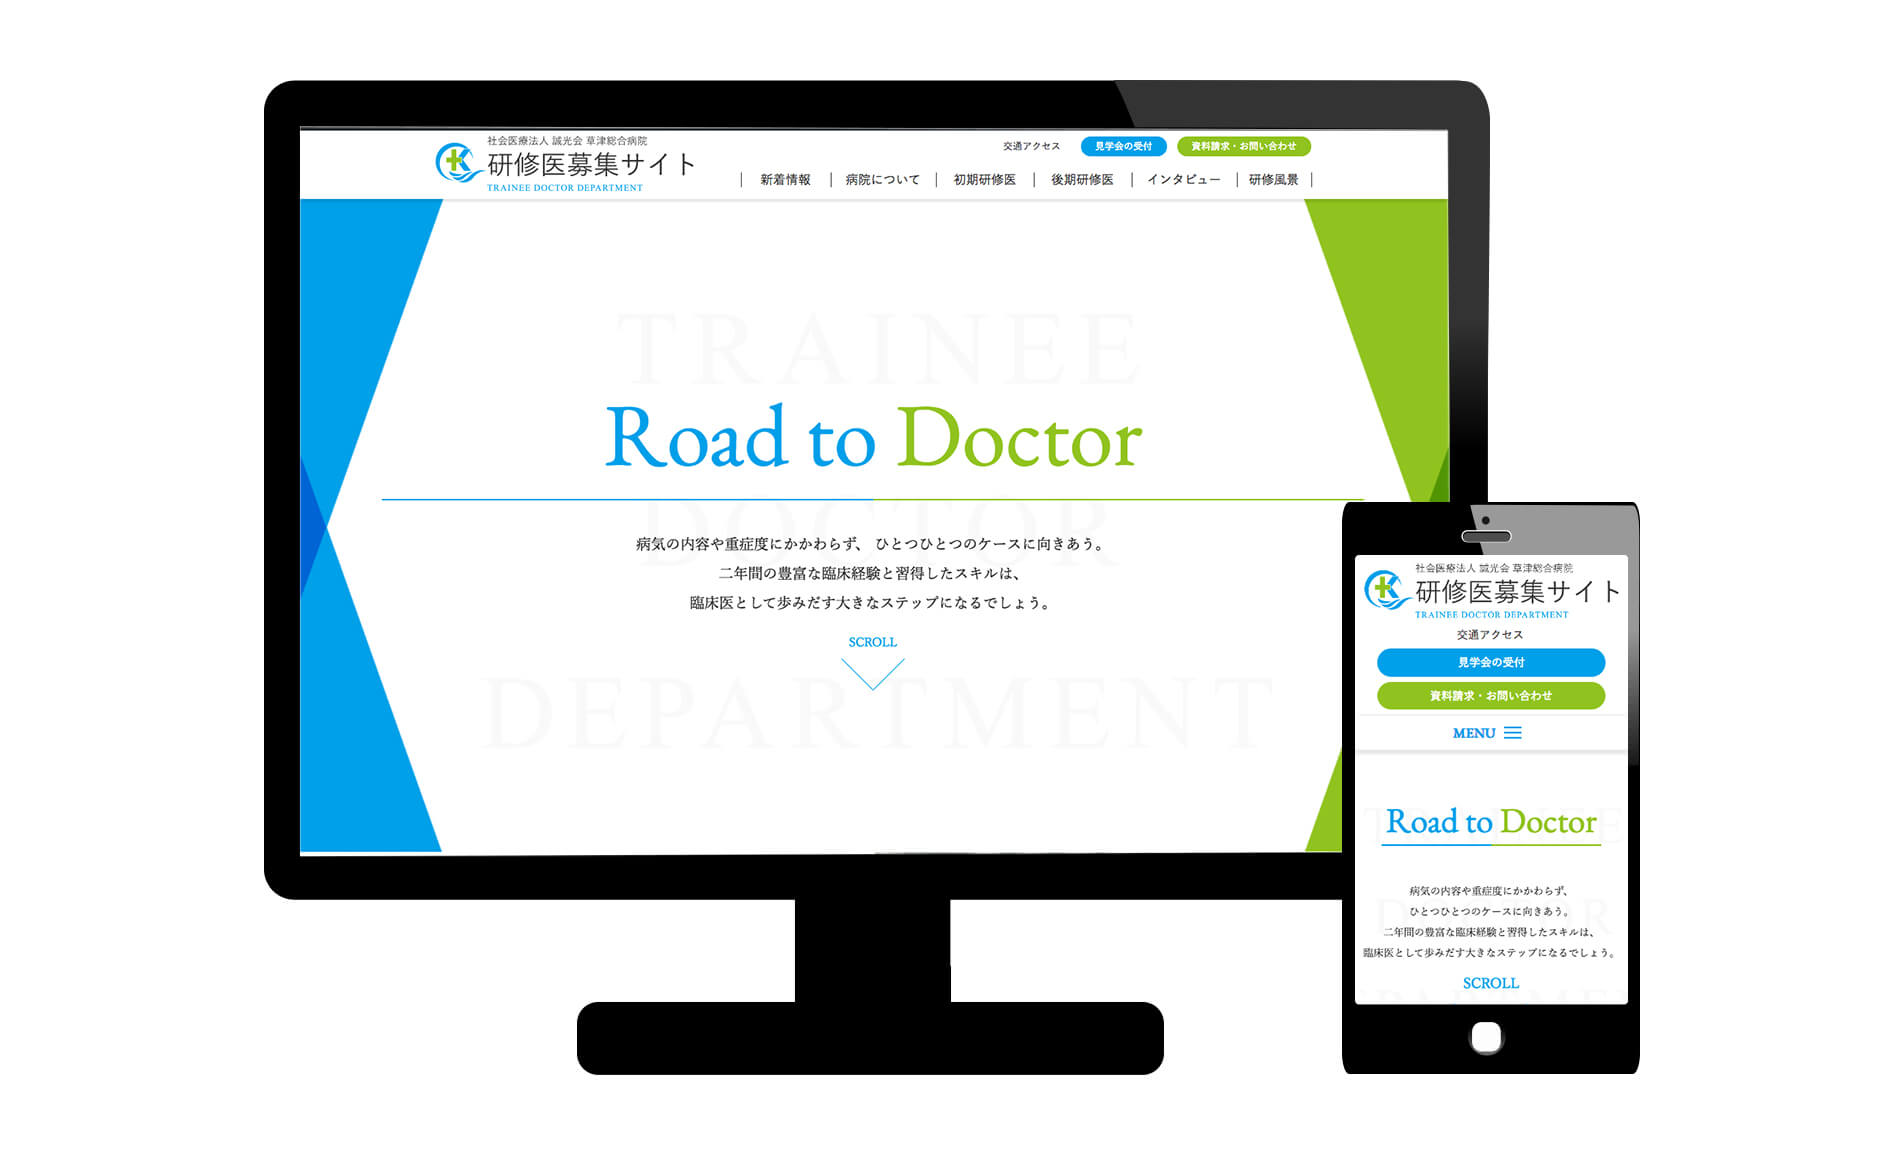 草津総合病院 研修医募集のウェブサイトをリニューアルオープン